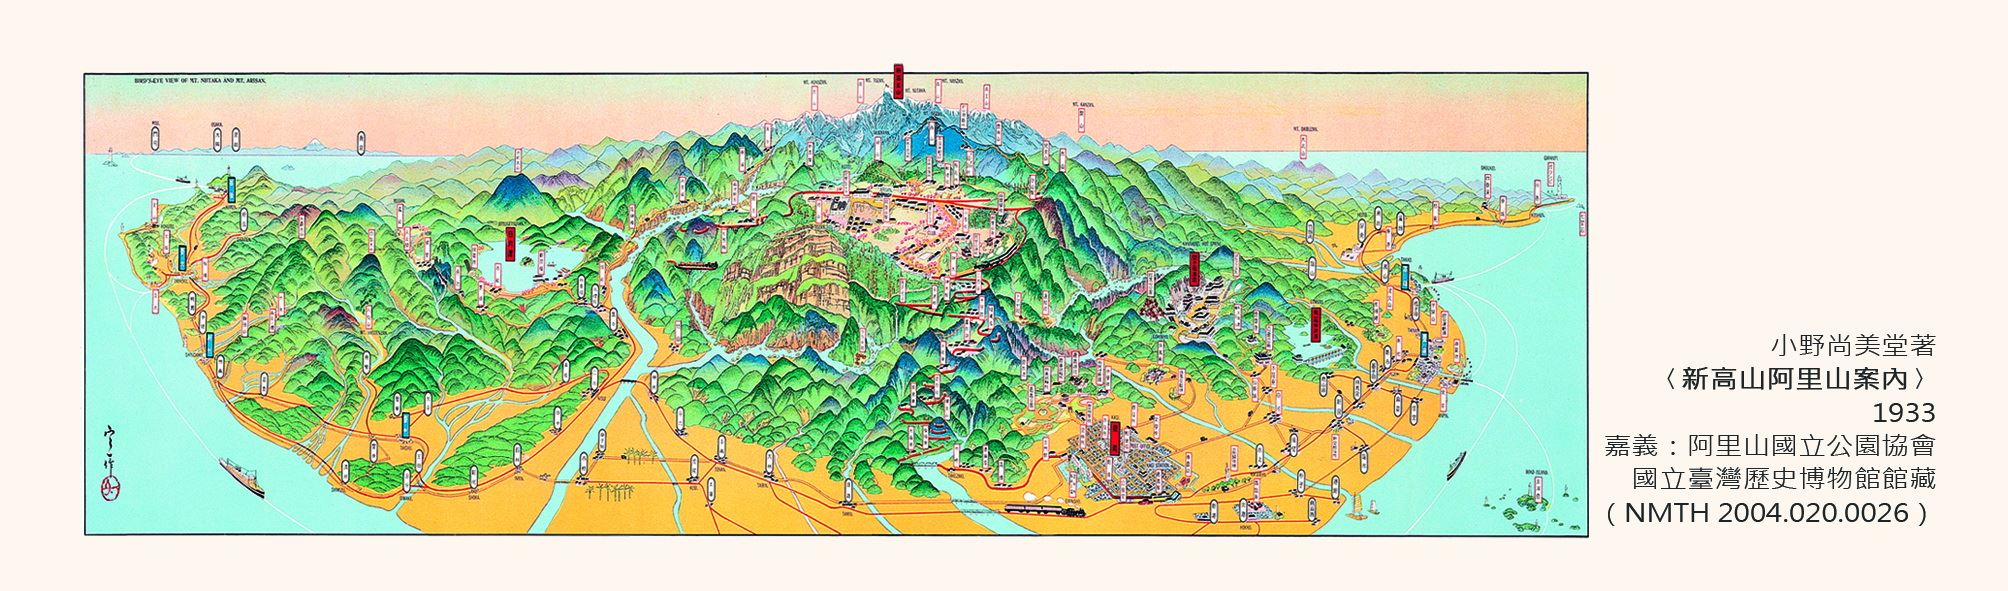 地圖書籤3(1933年-新高山阿里山)